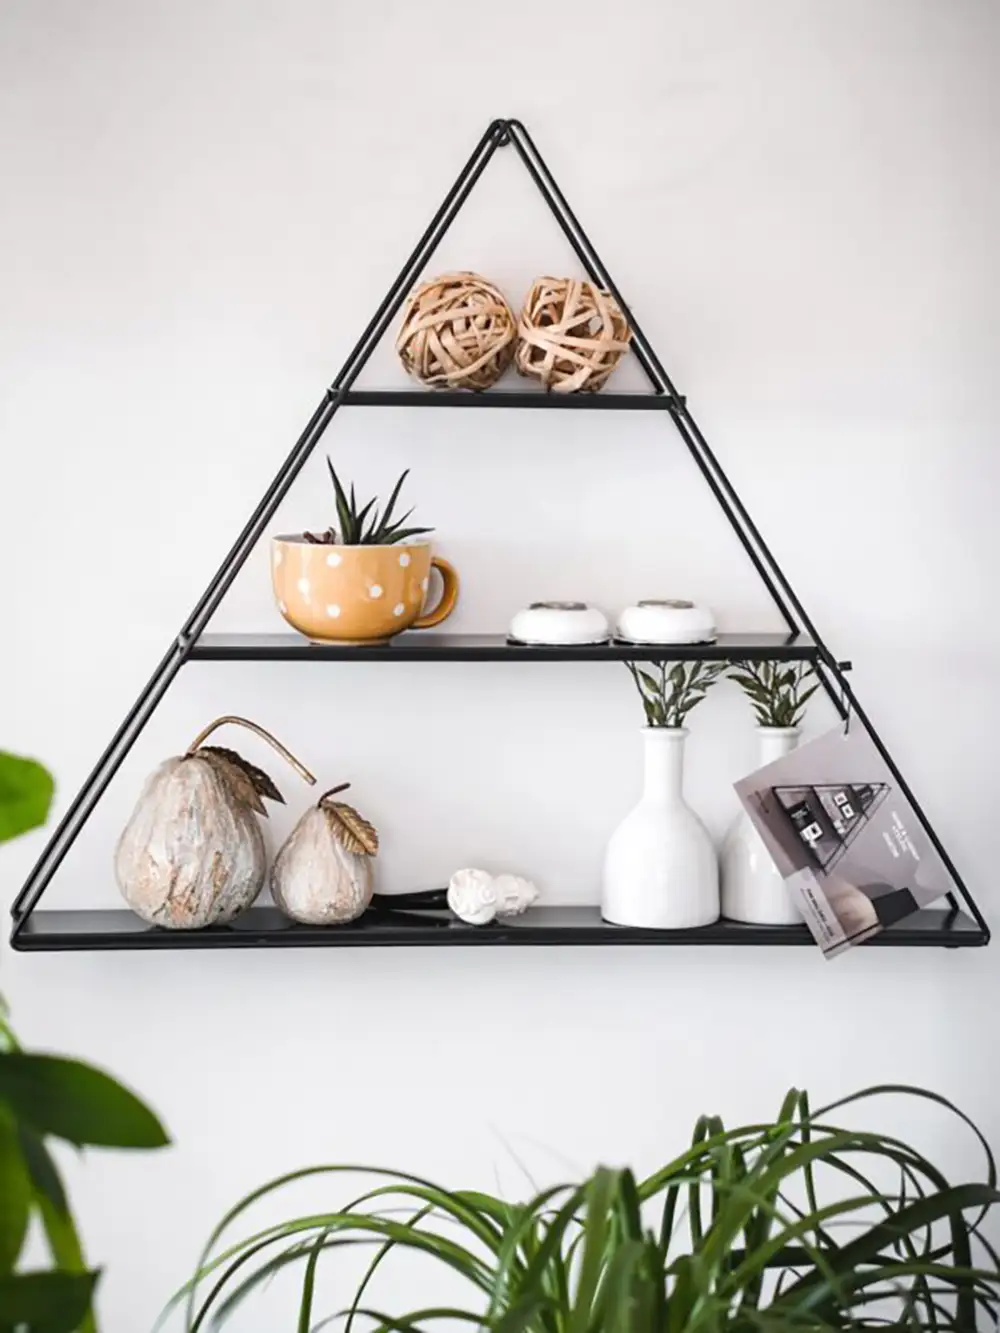 Triangle Shaped Wall Shelf (Metal Sheet Shelf) - Thumbnail